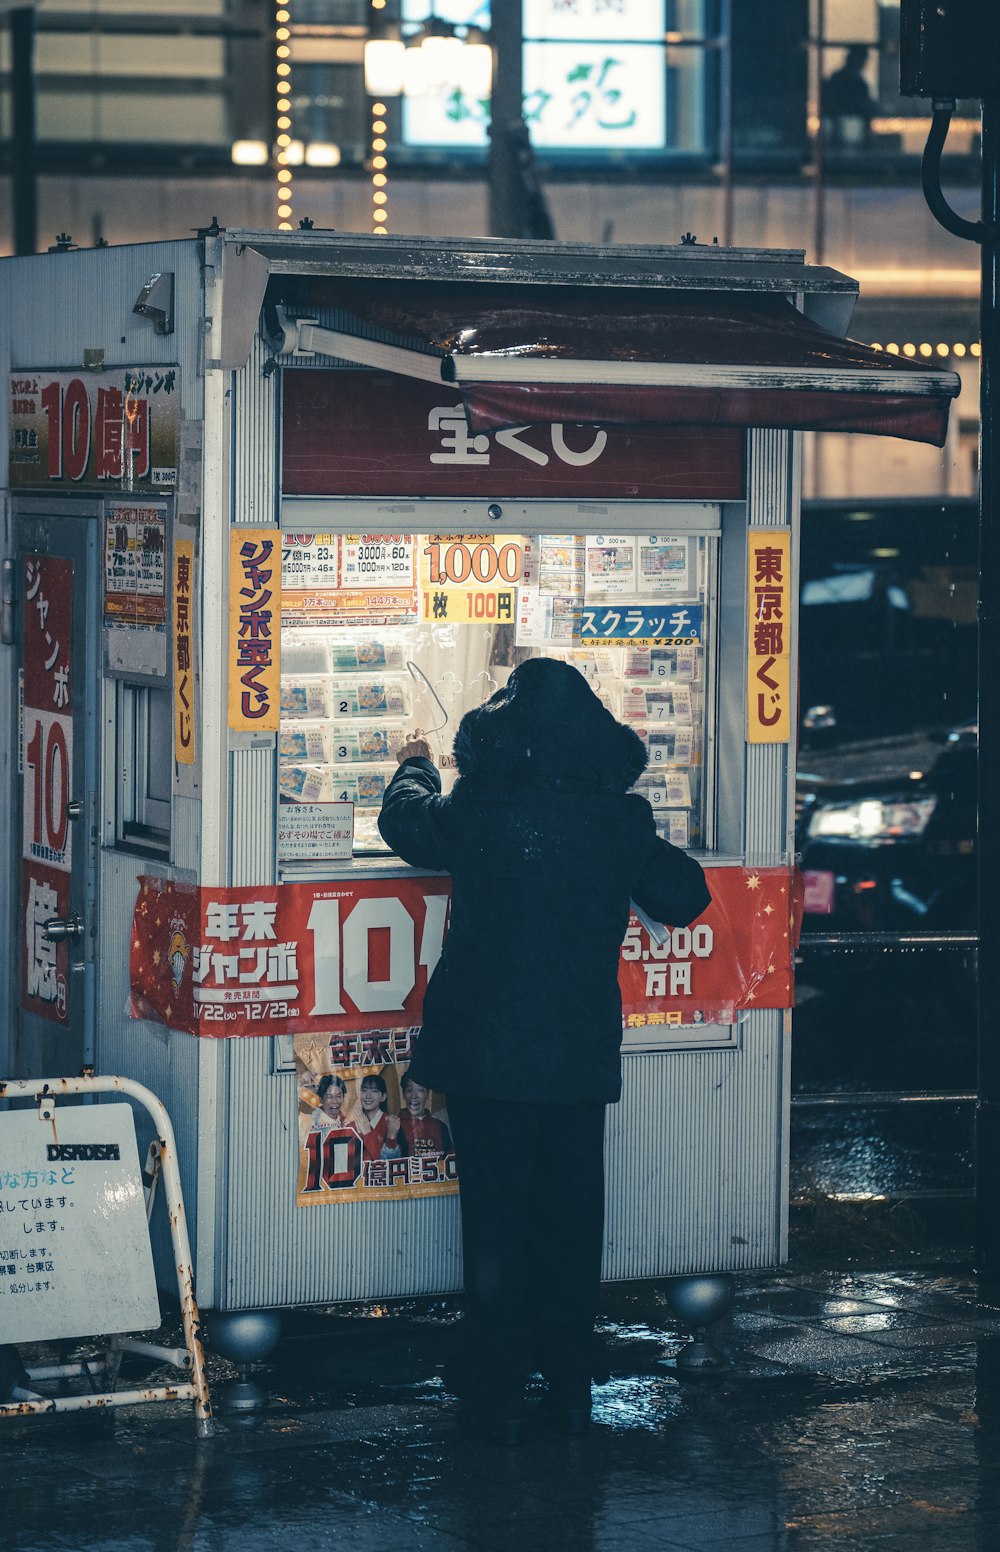 uma pessoa em pé na frente de uma máquina de venda automática